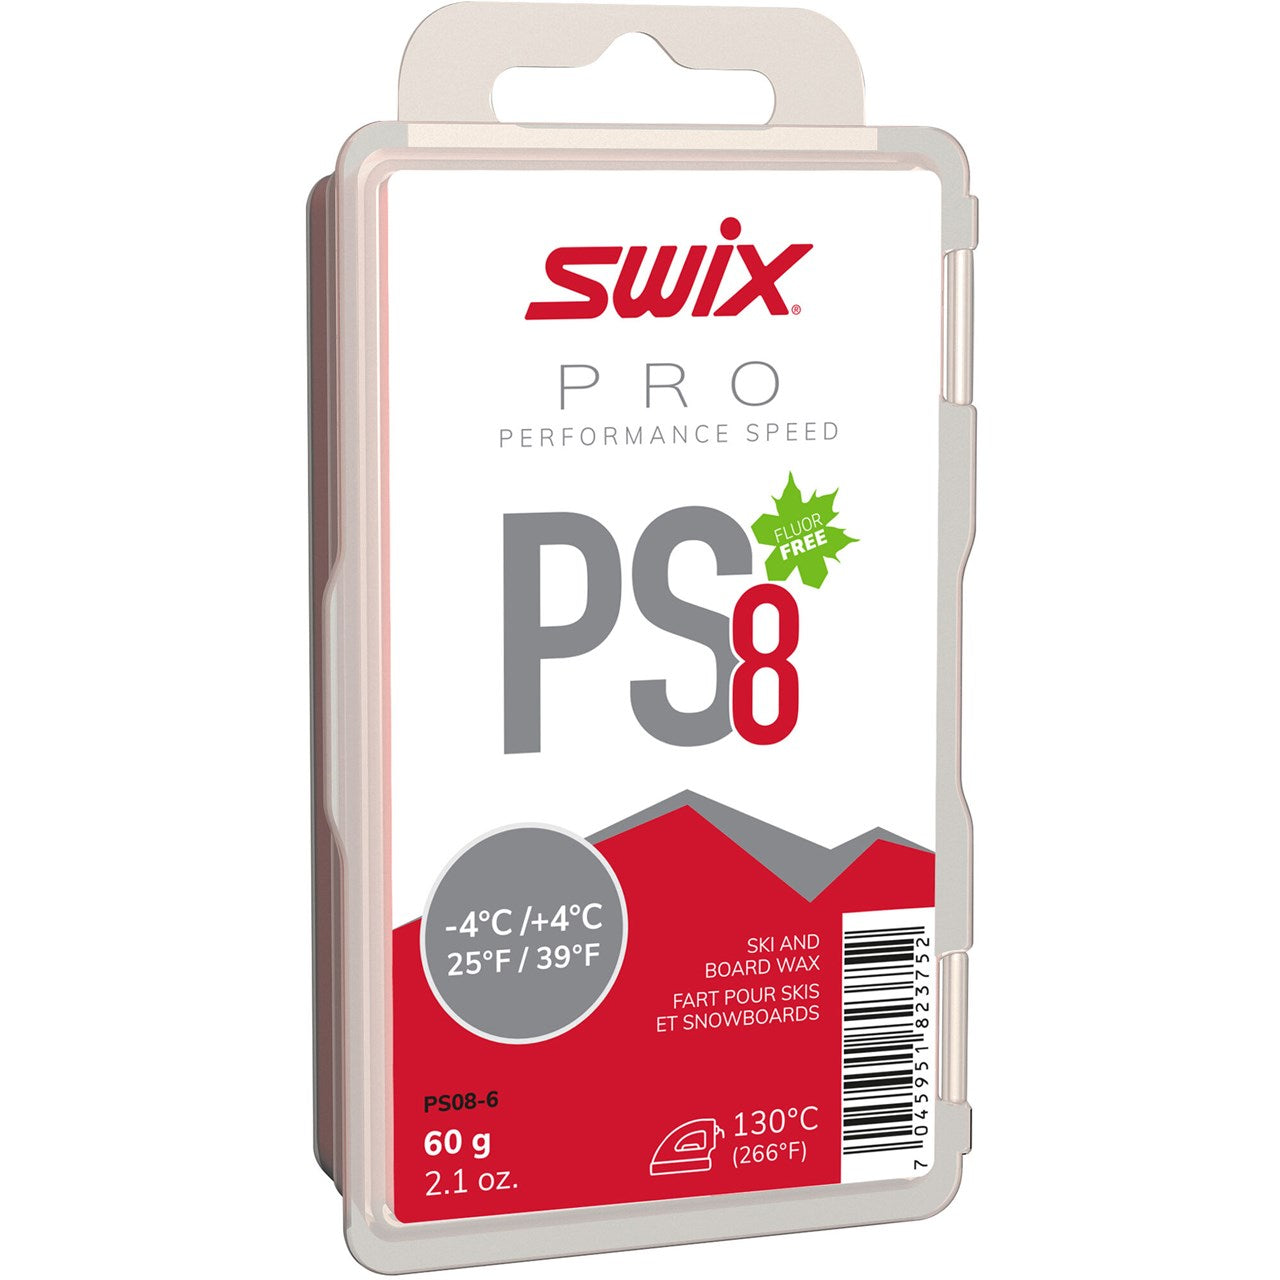 Swix Ps8 Red, -4°C/+4°C, 60g